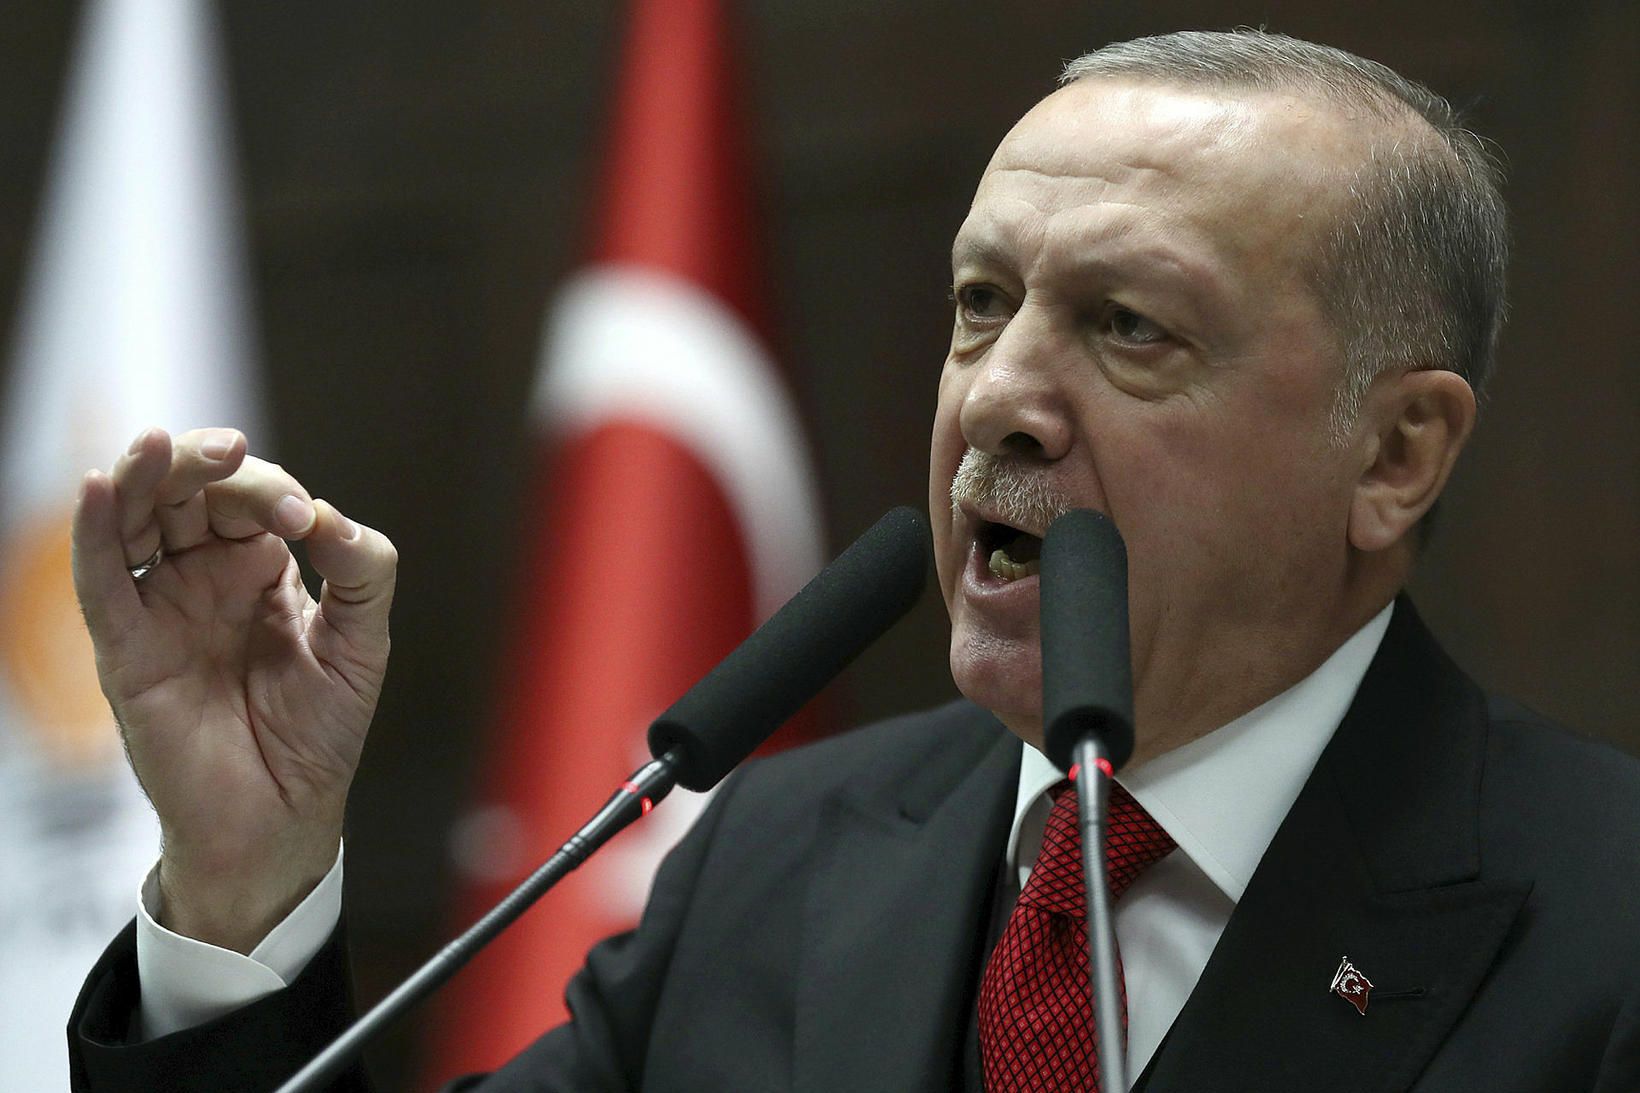 Recep Tayyip Erdogan forseti Tyrklands. Ríkisstjórn hans hefur allt frá …